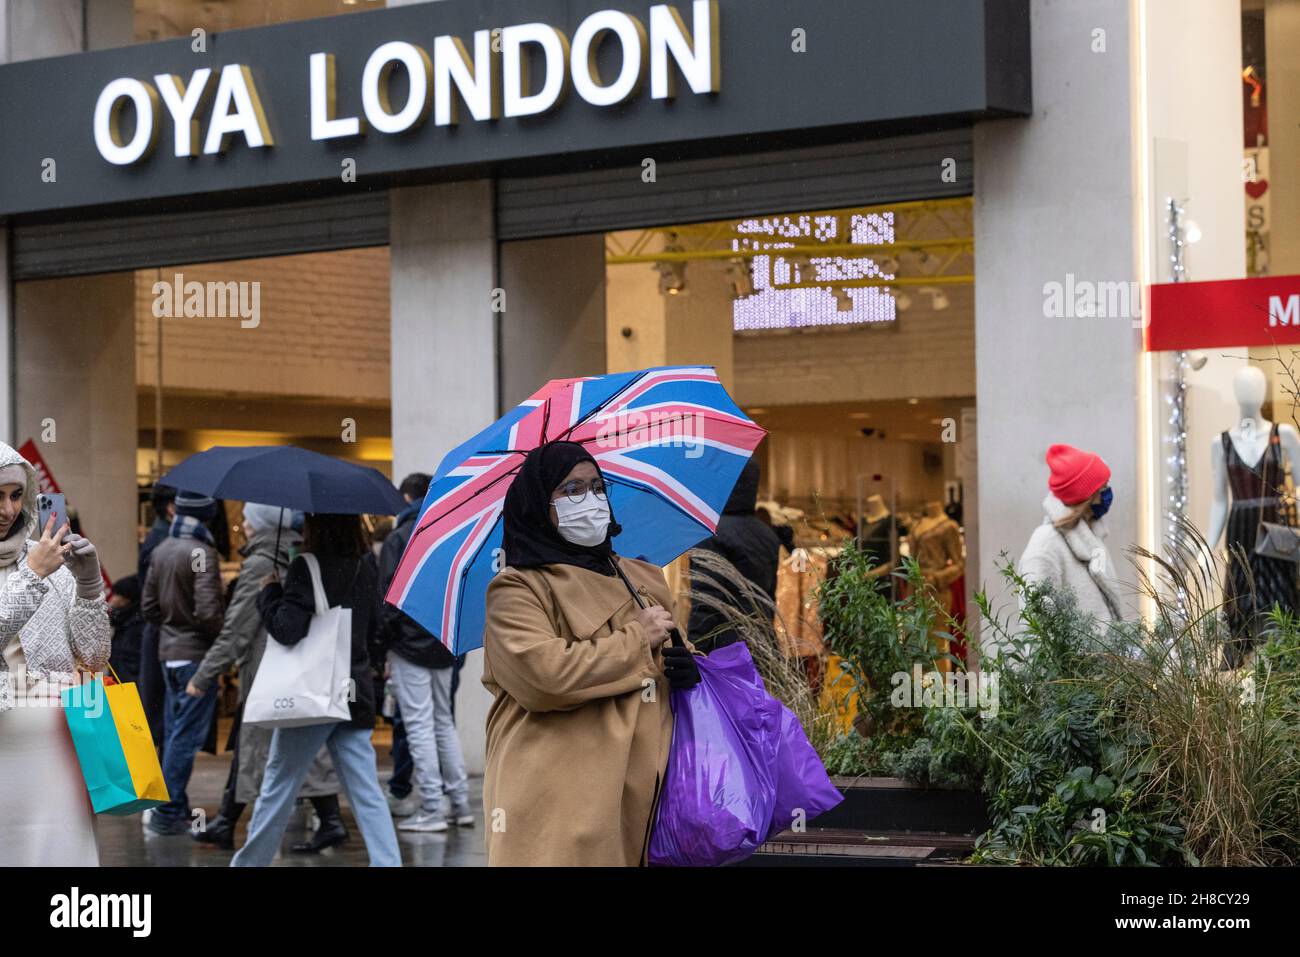 Gli amanti dello shopping natalizio di Londra possono sfruttare al massimo la libertà di uscire e godersi le attrazioni turistiche durante le feste, mentre la variante Omicron minaccia, Regno Unito Foto Stock